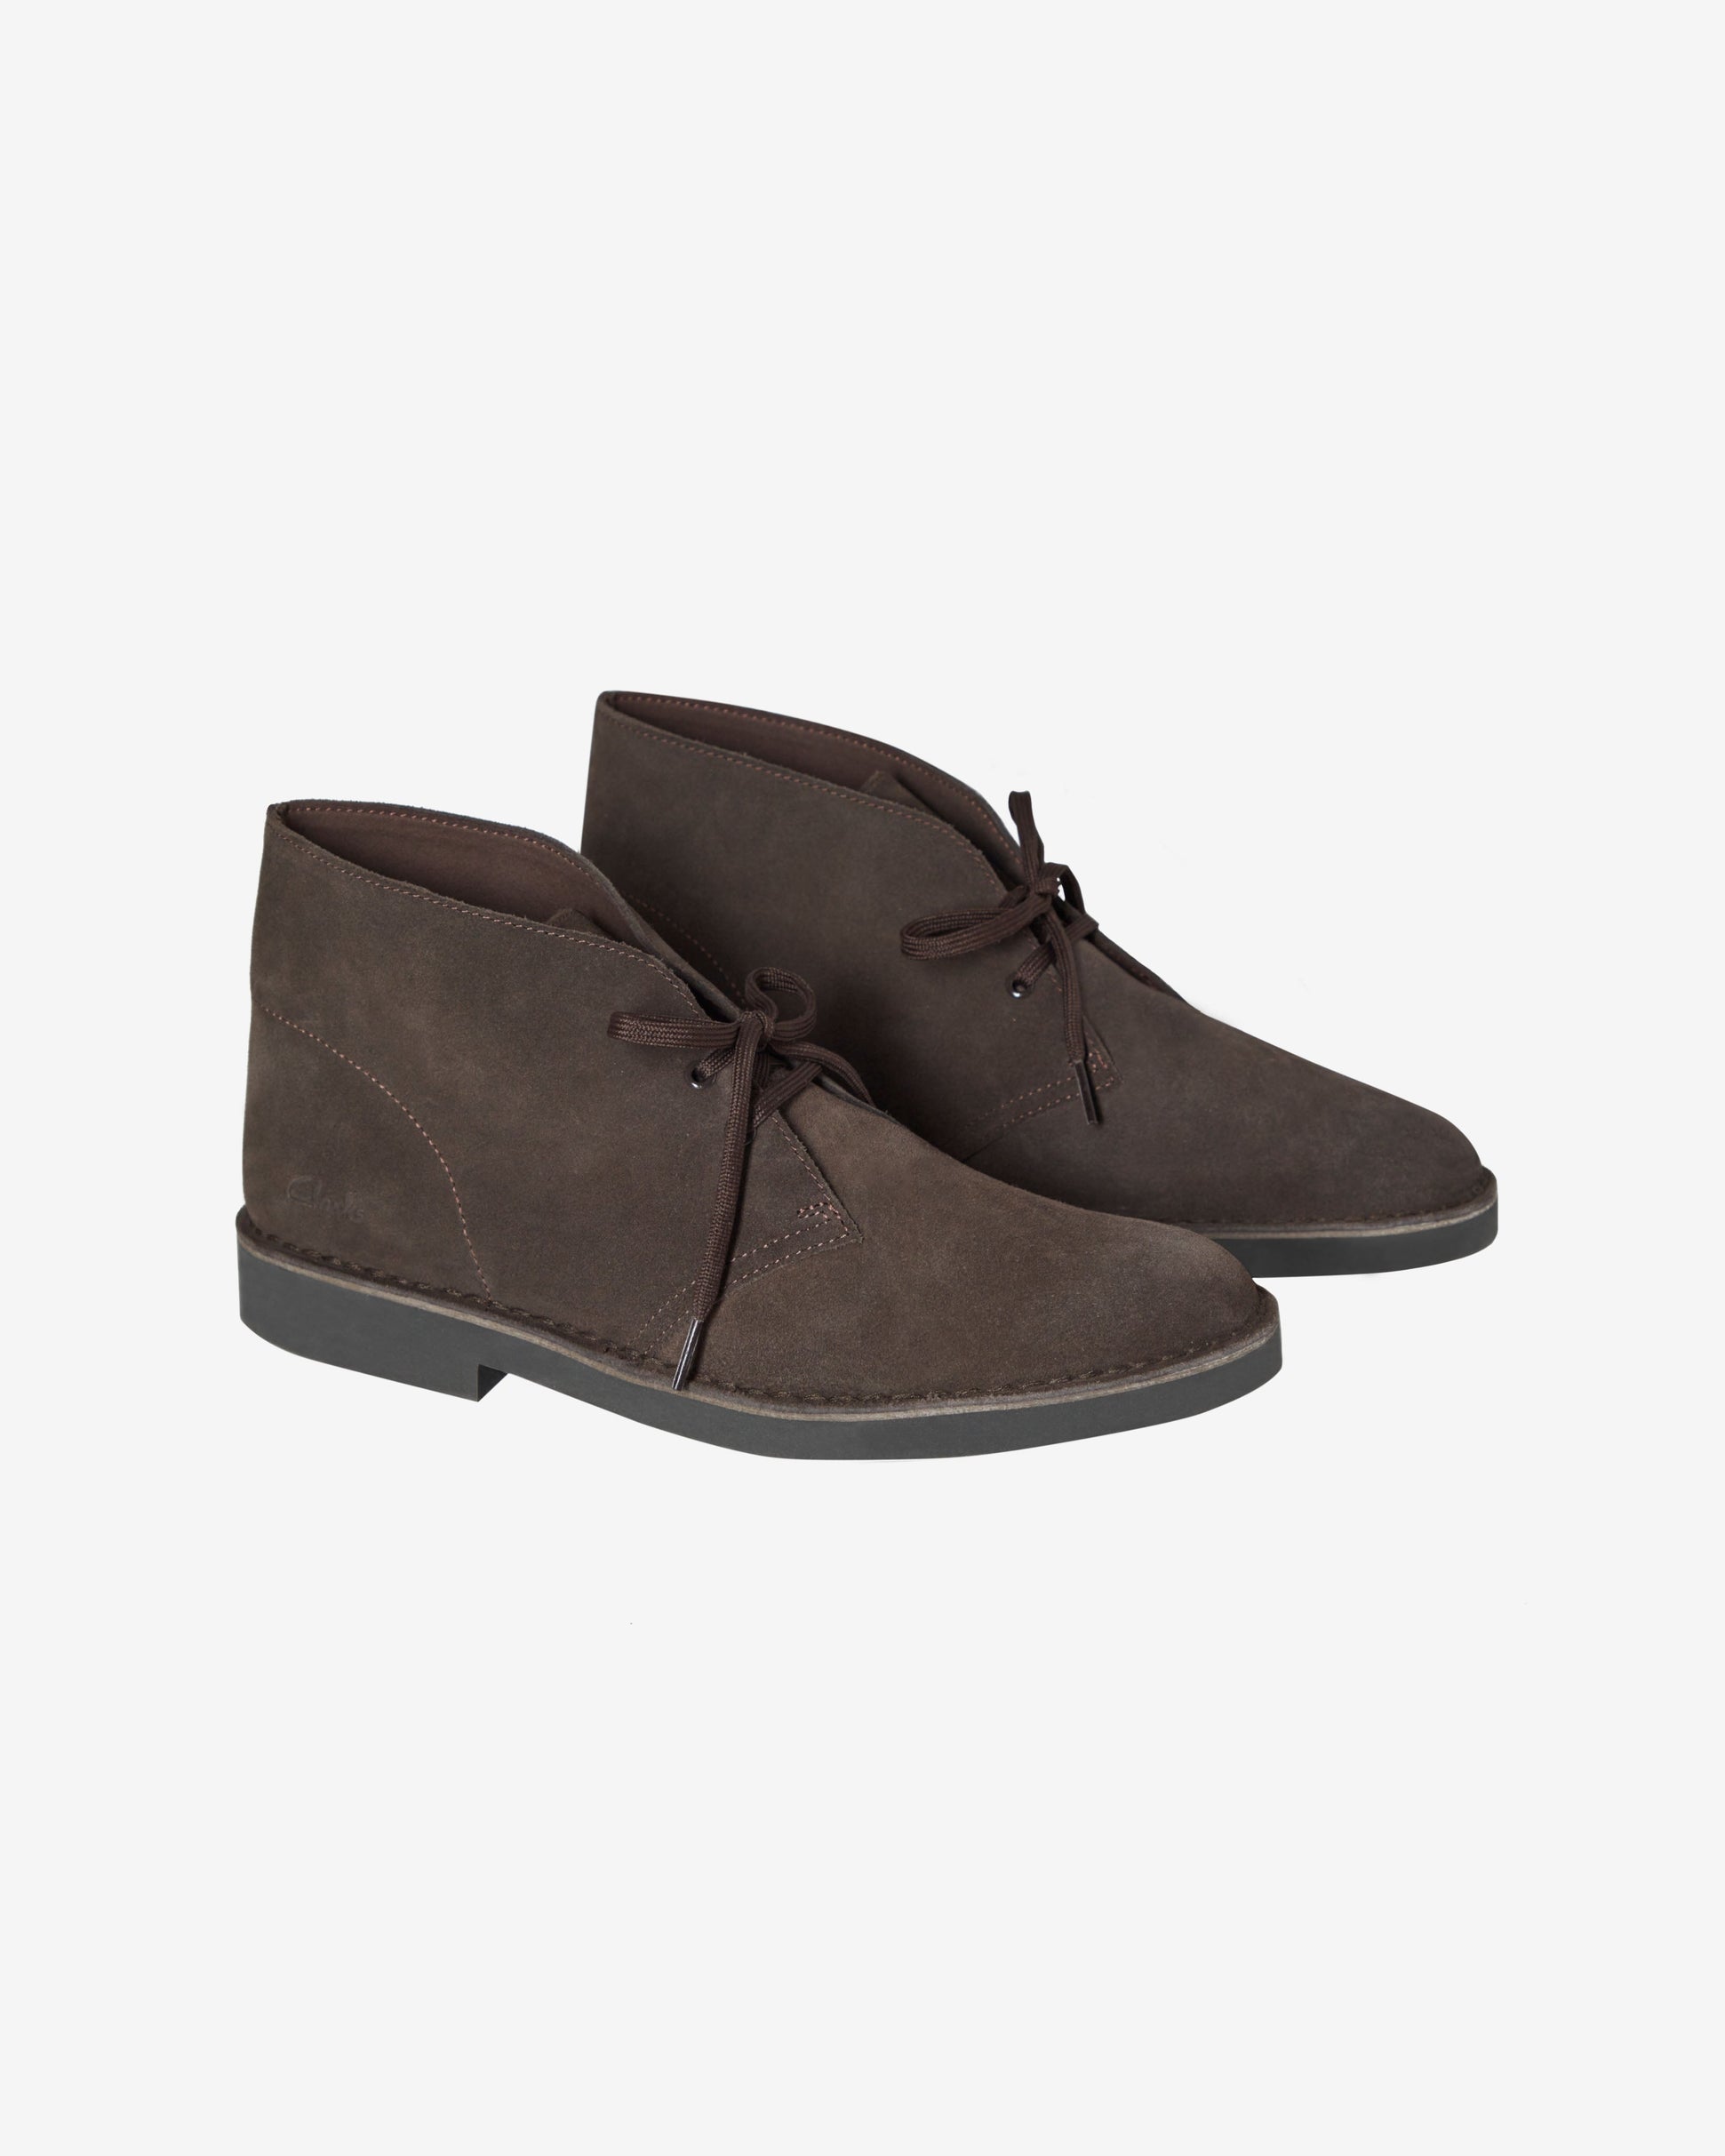 CLARK'S DESERT BOOT Shoes - Dark Brown